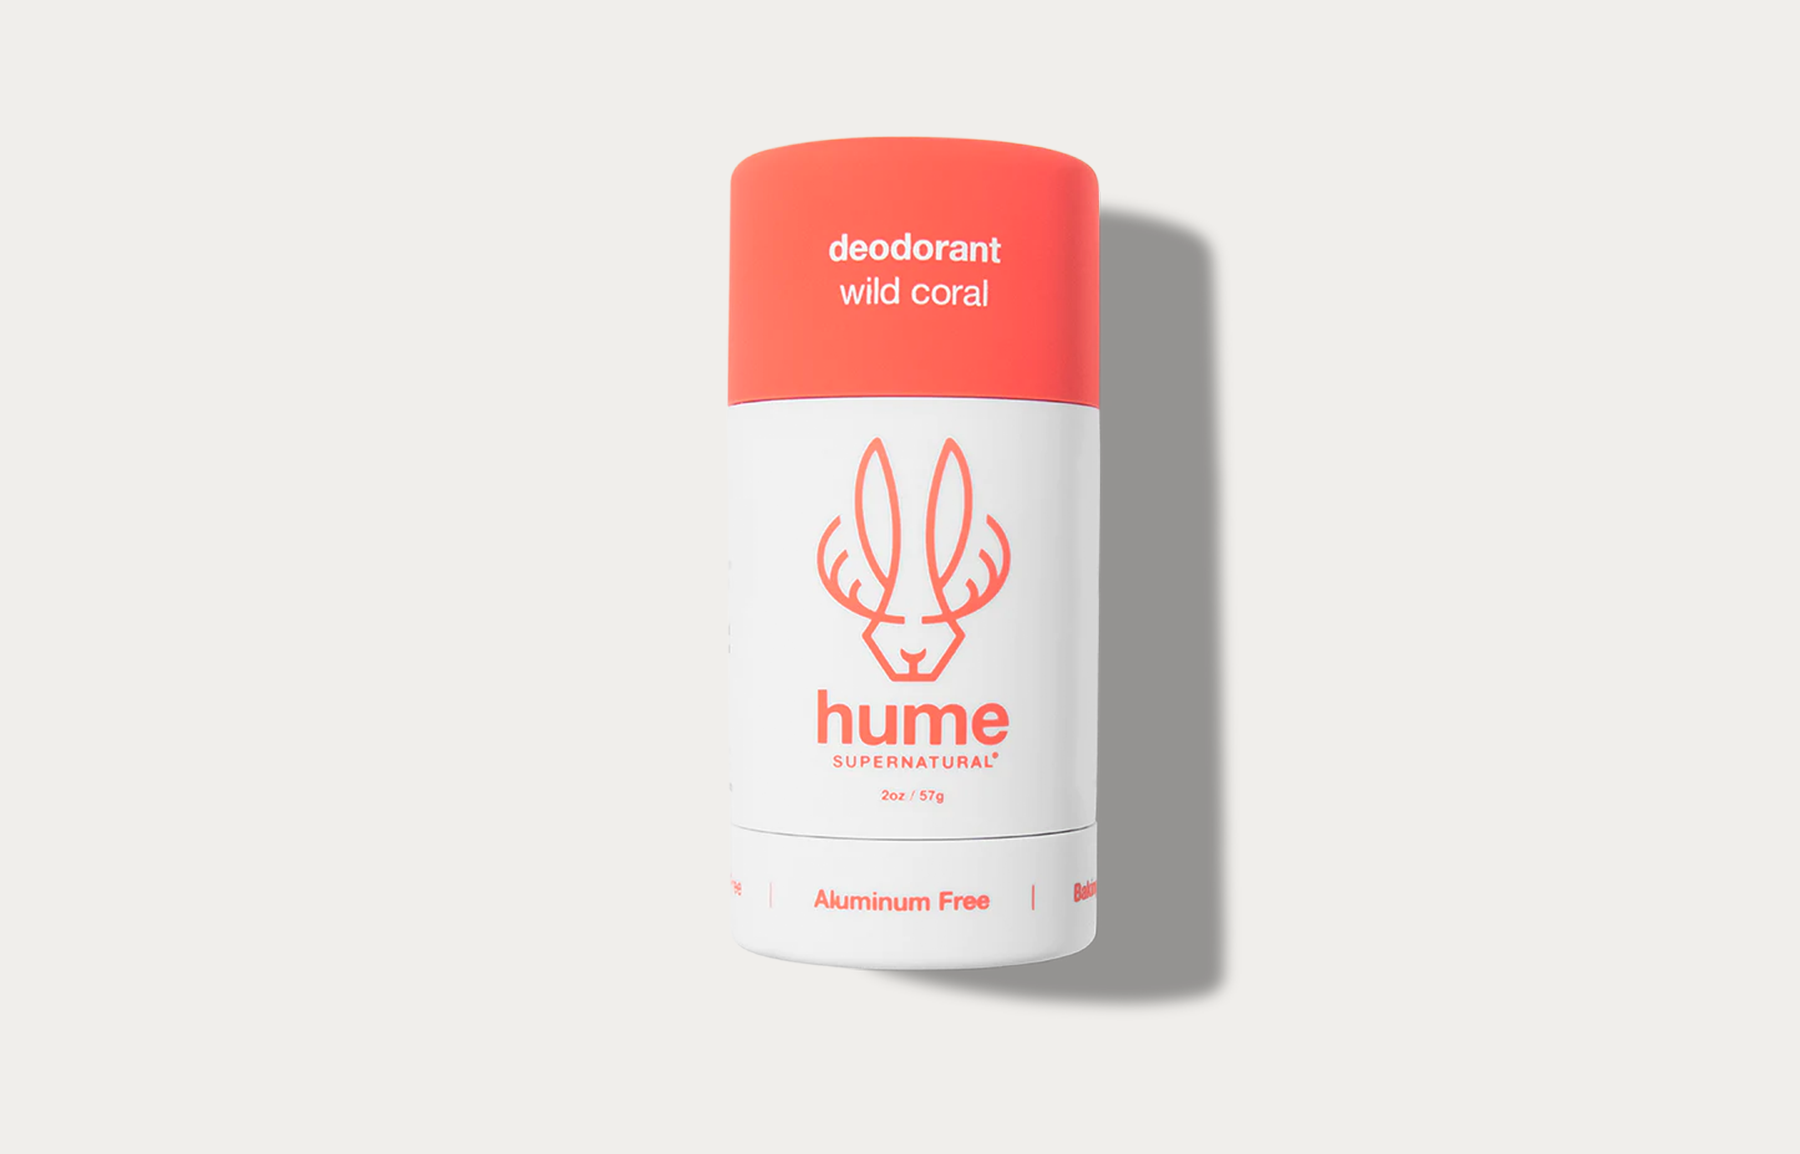 wild coral deodorant